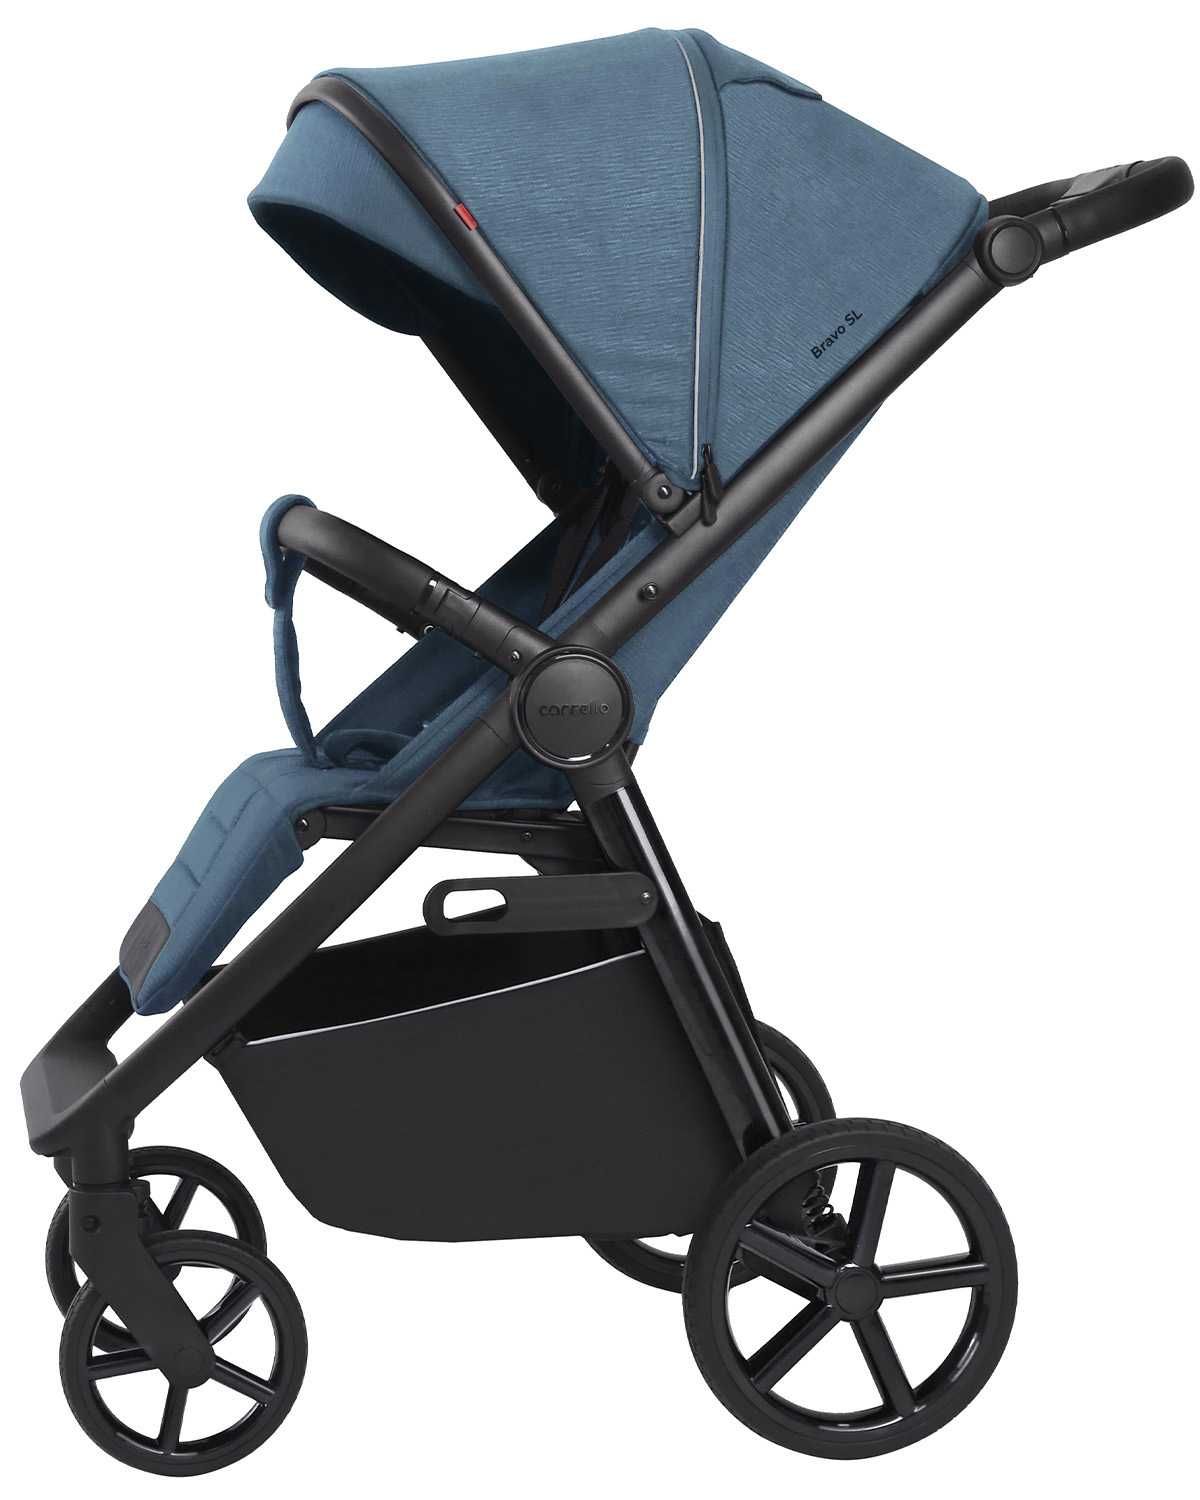 Carrello BRAVO Plus SL cobalt blue wózek dziecięcy do 22 kg